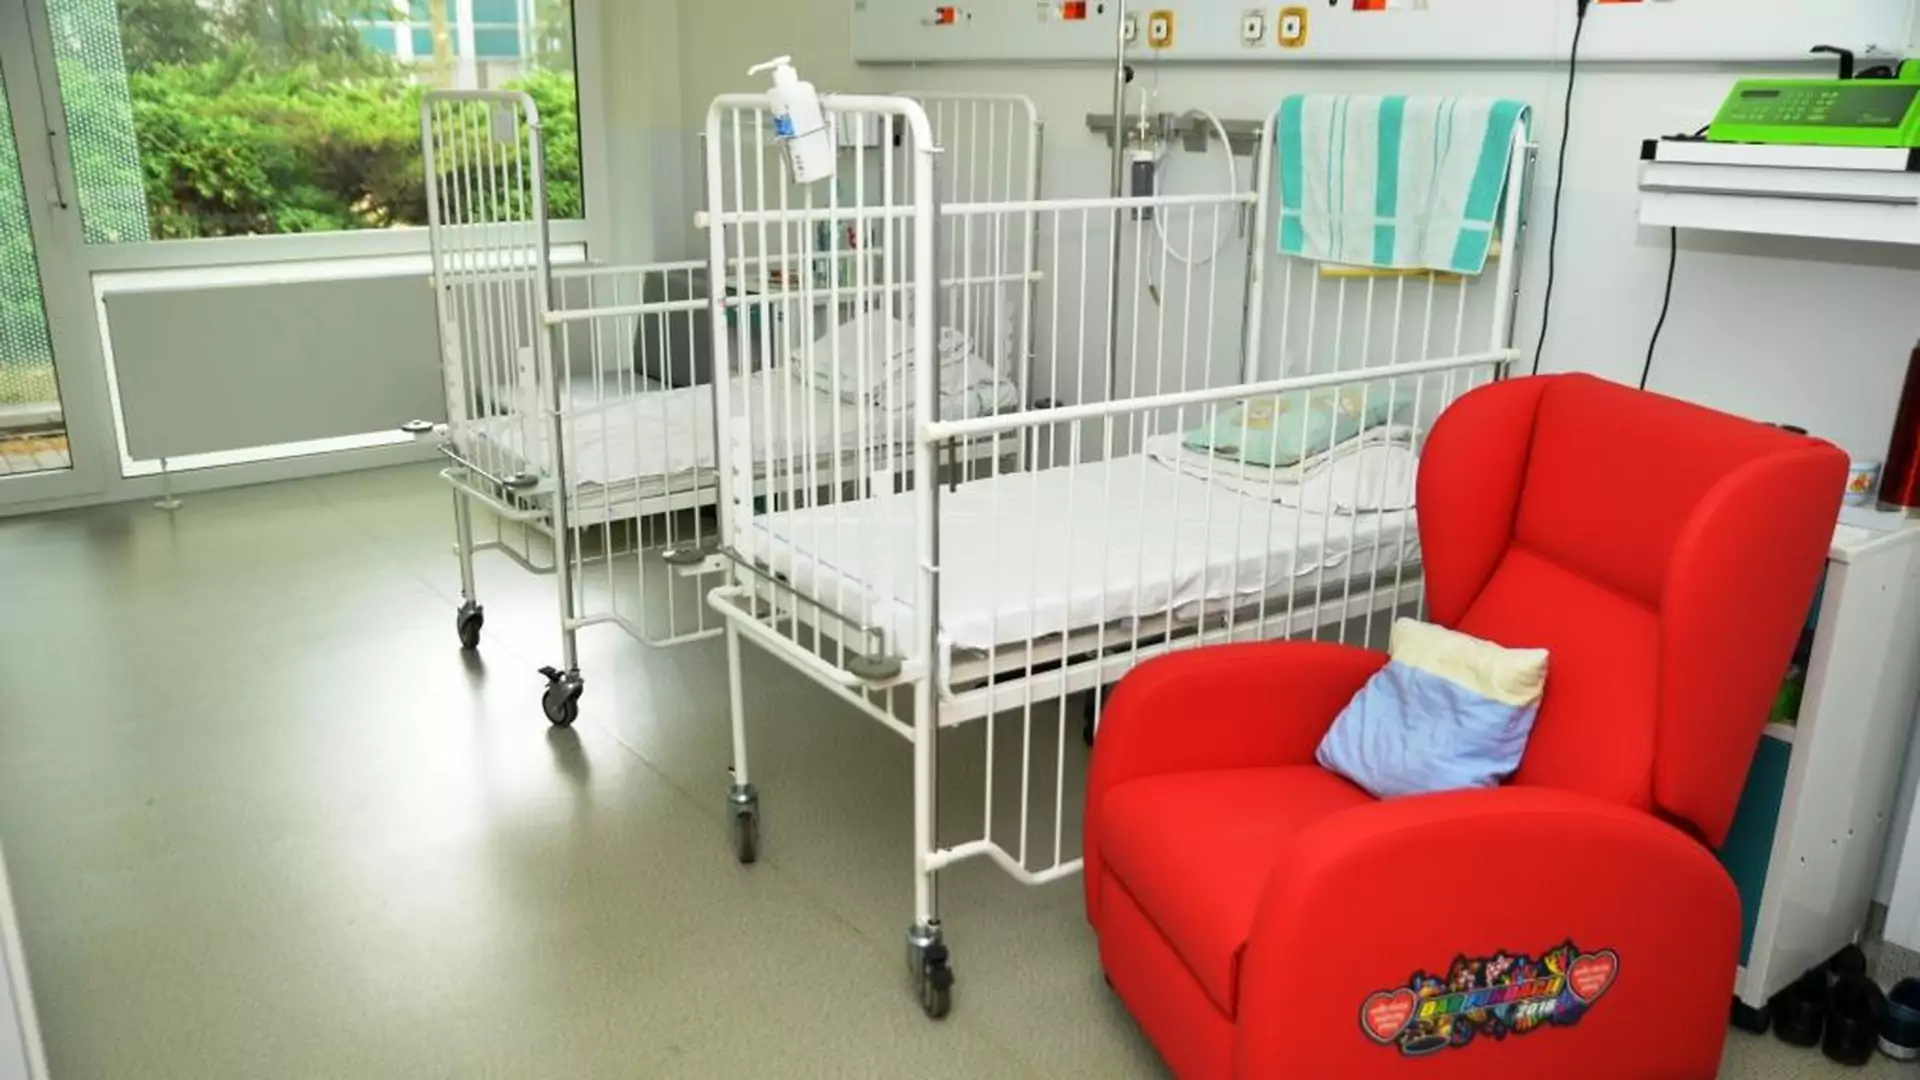 Fotele od WOŚP miały pozwolić rodzicom nocować przy swoich pociechach, ten szpital postanowił inaczej